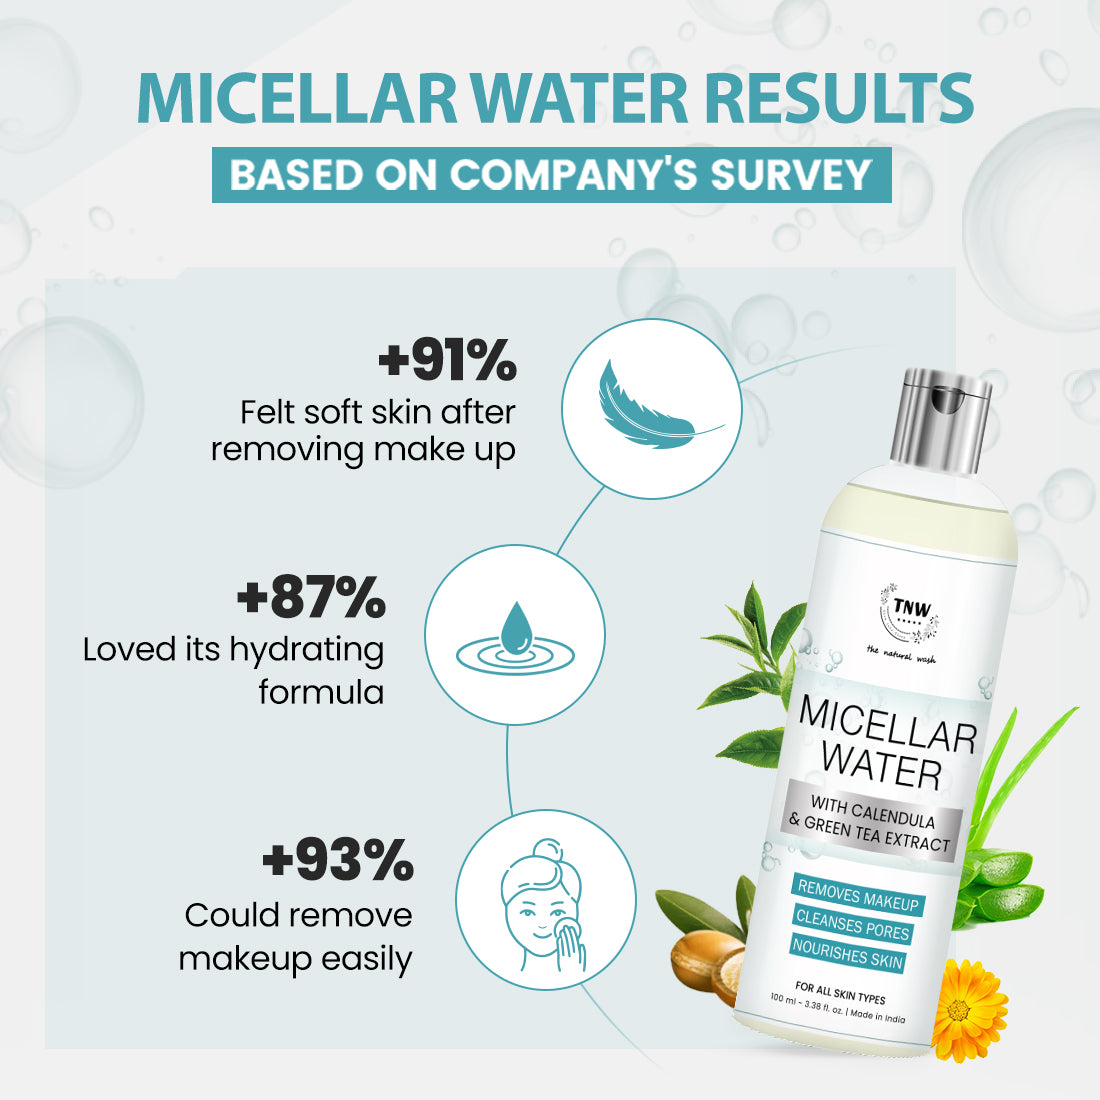 Micellar Water with Calendula & Green Tea Extract